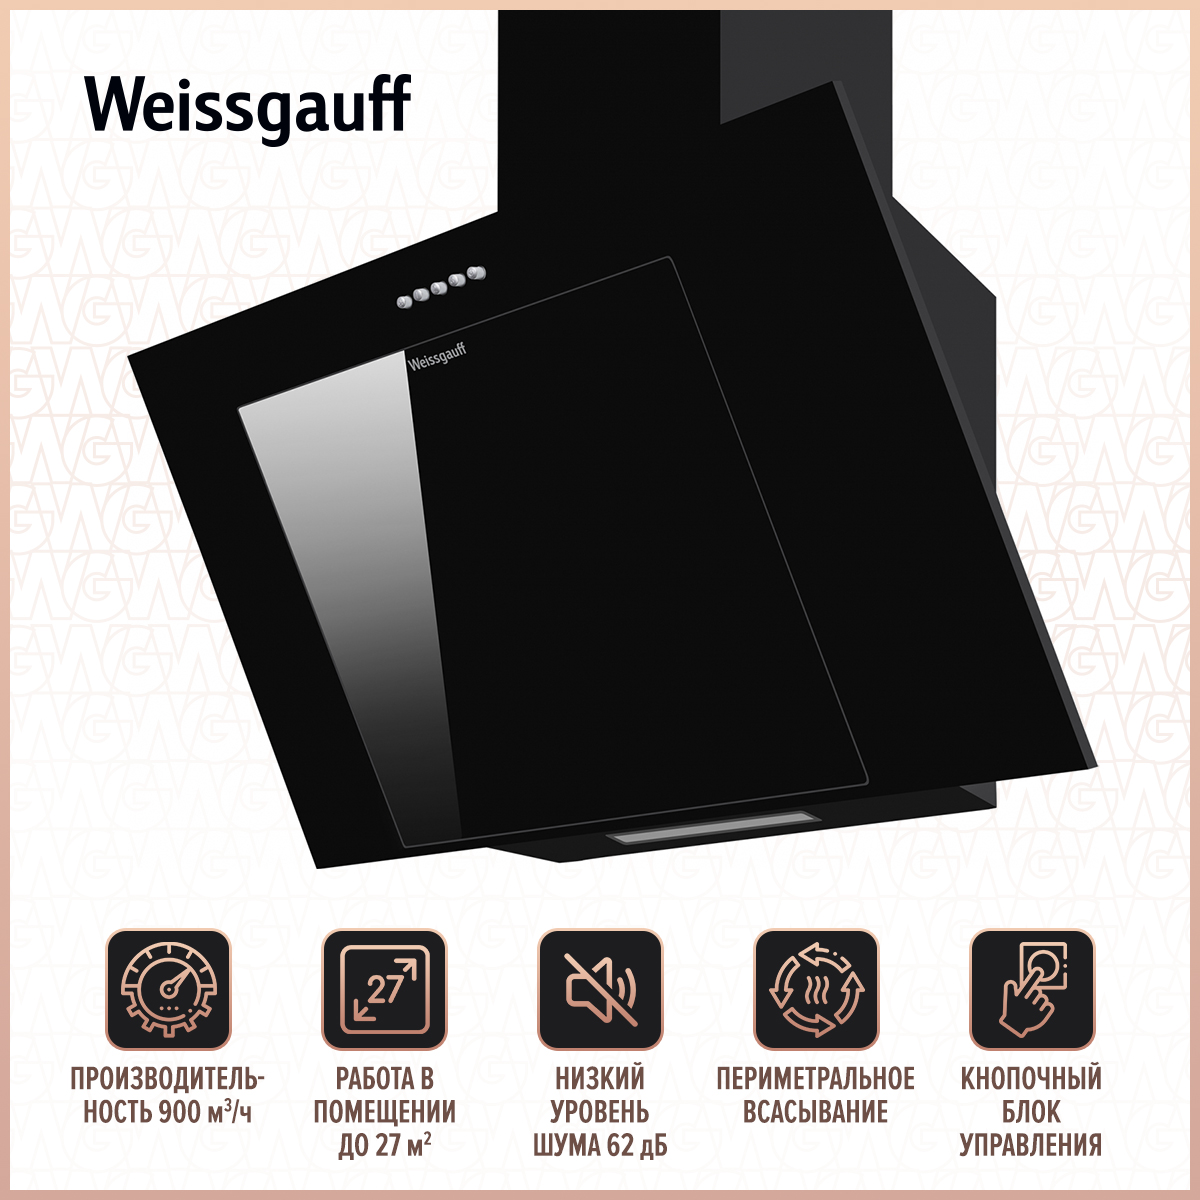 Вытяжка настенная Weissgauff Sigma 60 PB BL Black вытяжка weissgauff down draft 900 touch inverter black